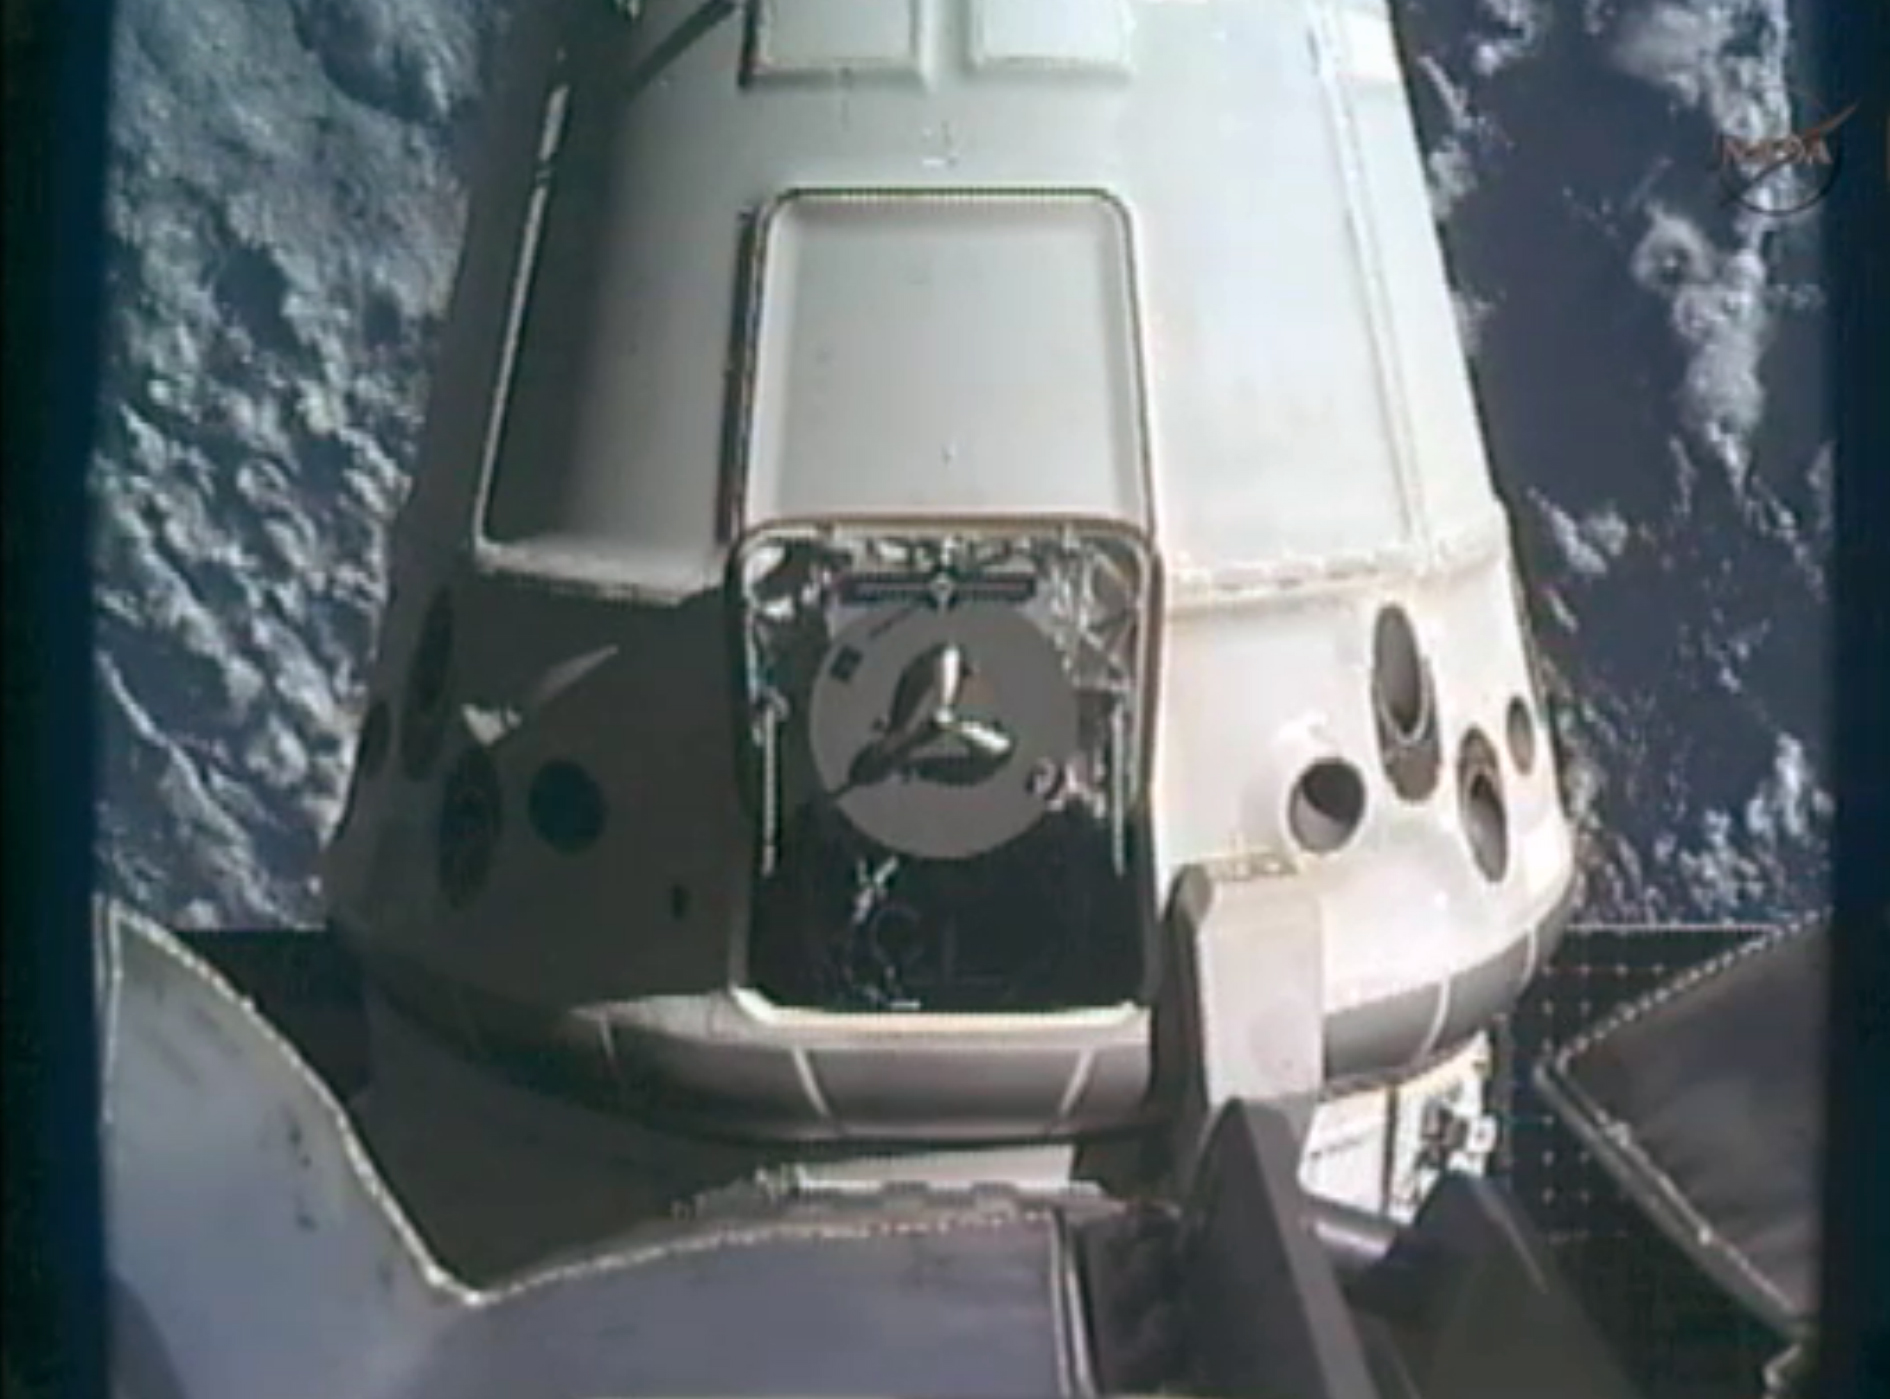 Farkosten lämnade Internationella rymdstationen med en 500 kilo tung last.